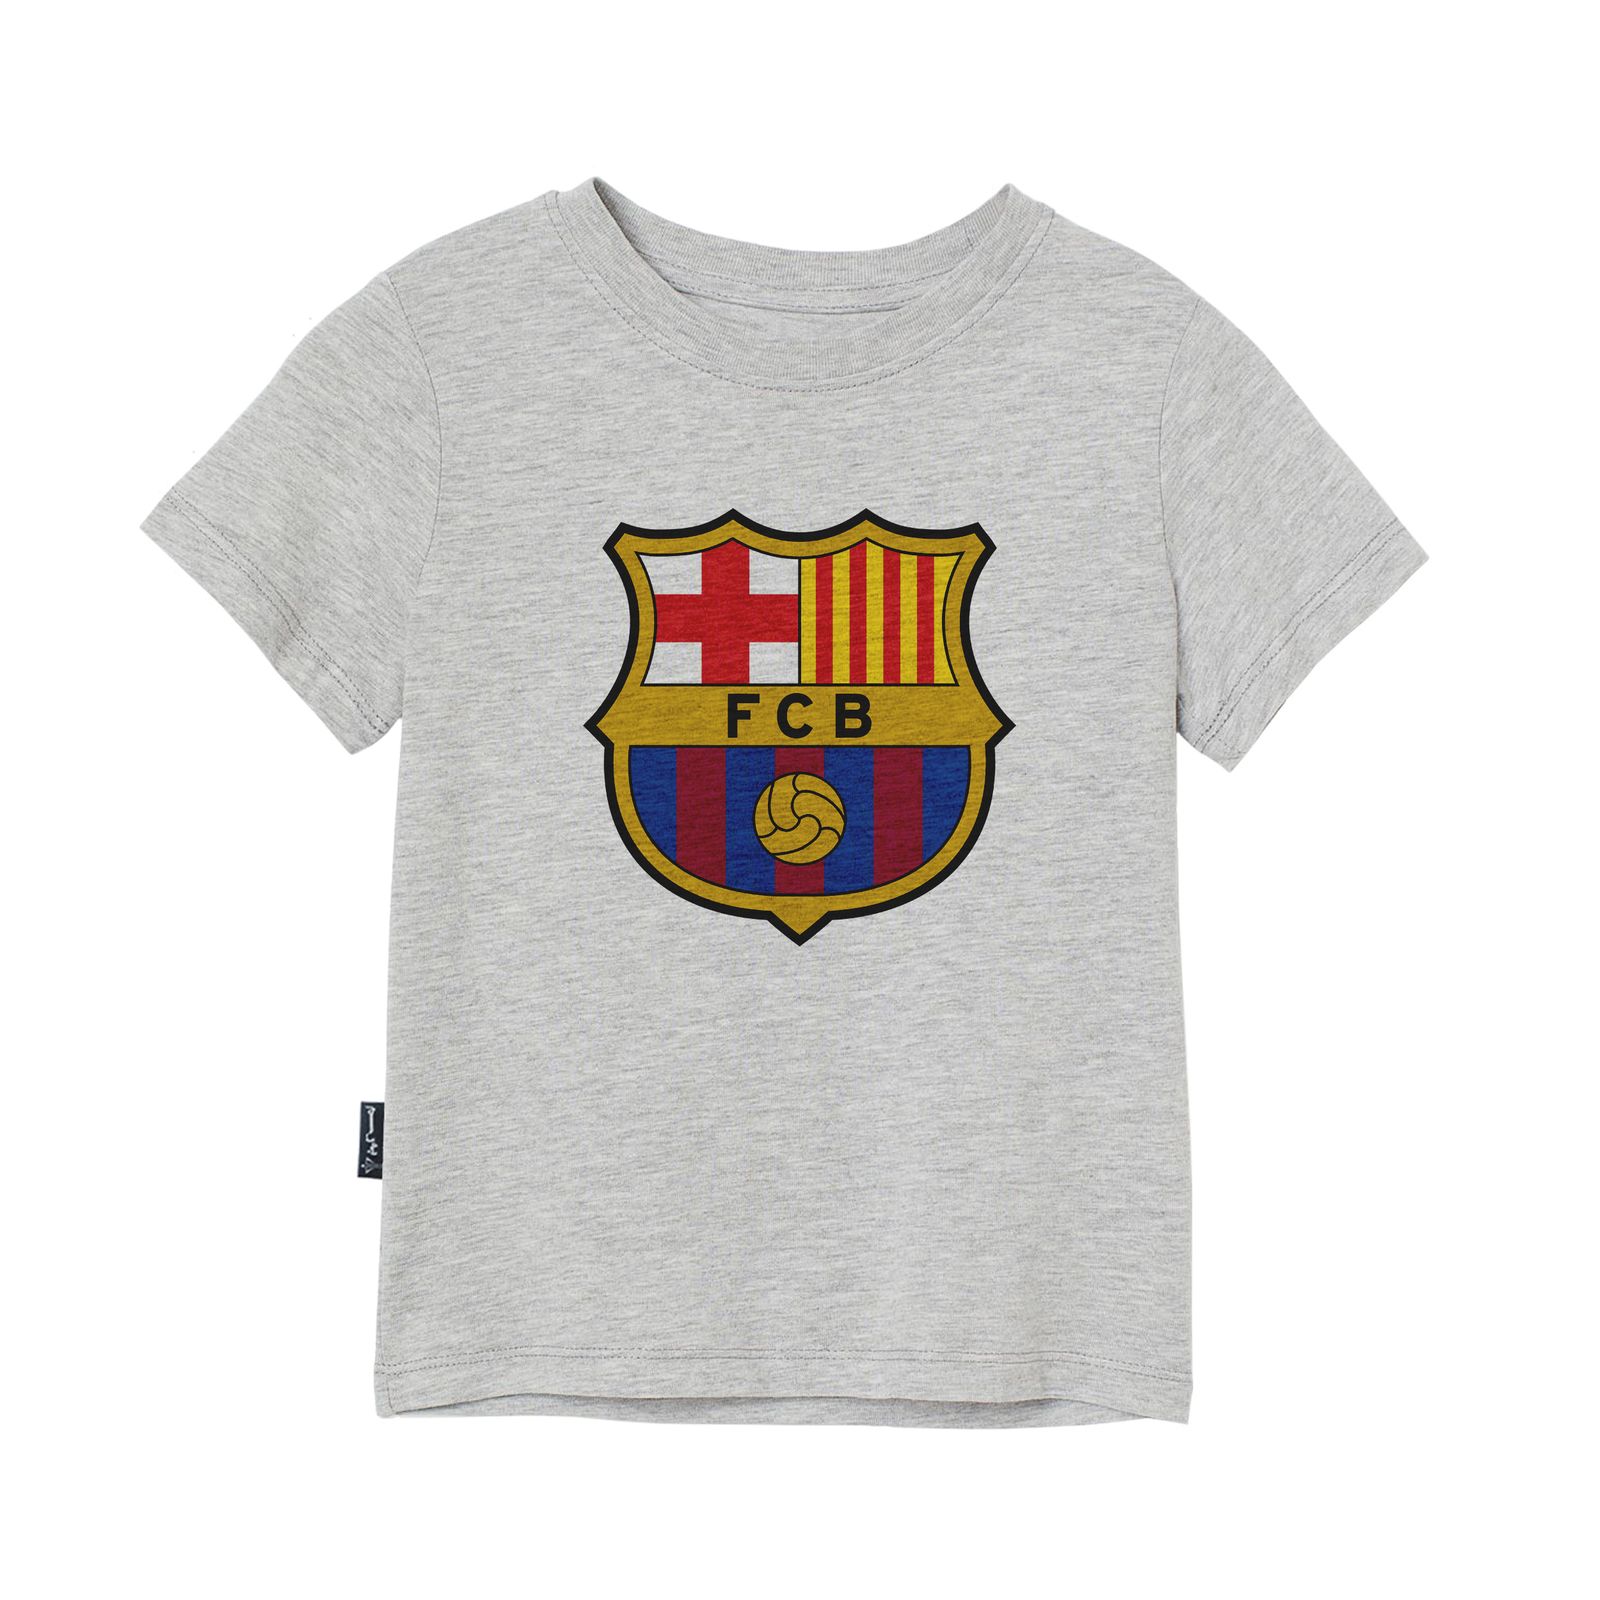 تی شرت آستین کوتاه پسرانه به رسم مدل بارسلونا کد 1113 -  - 3